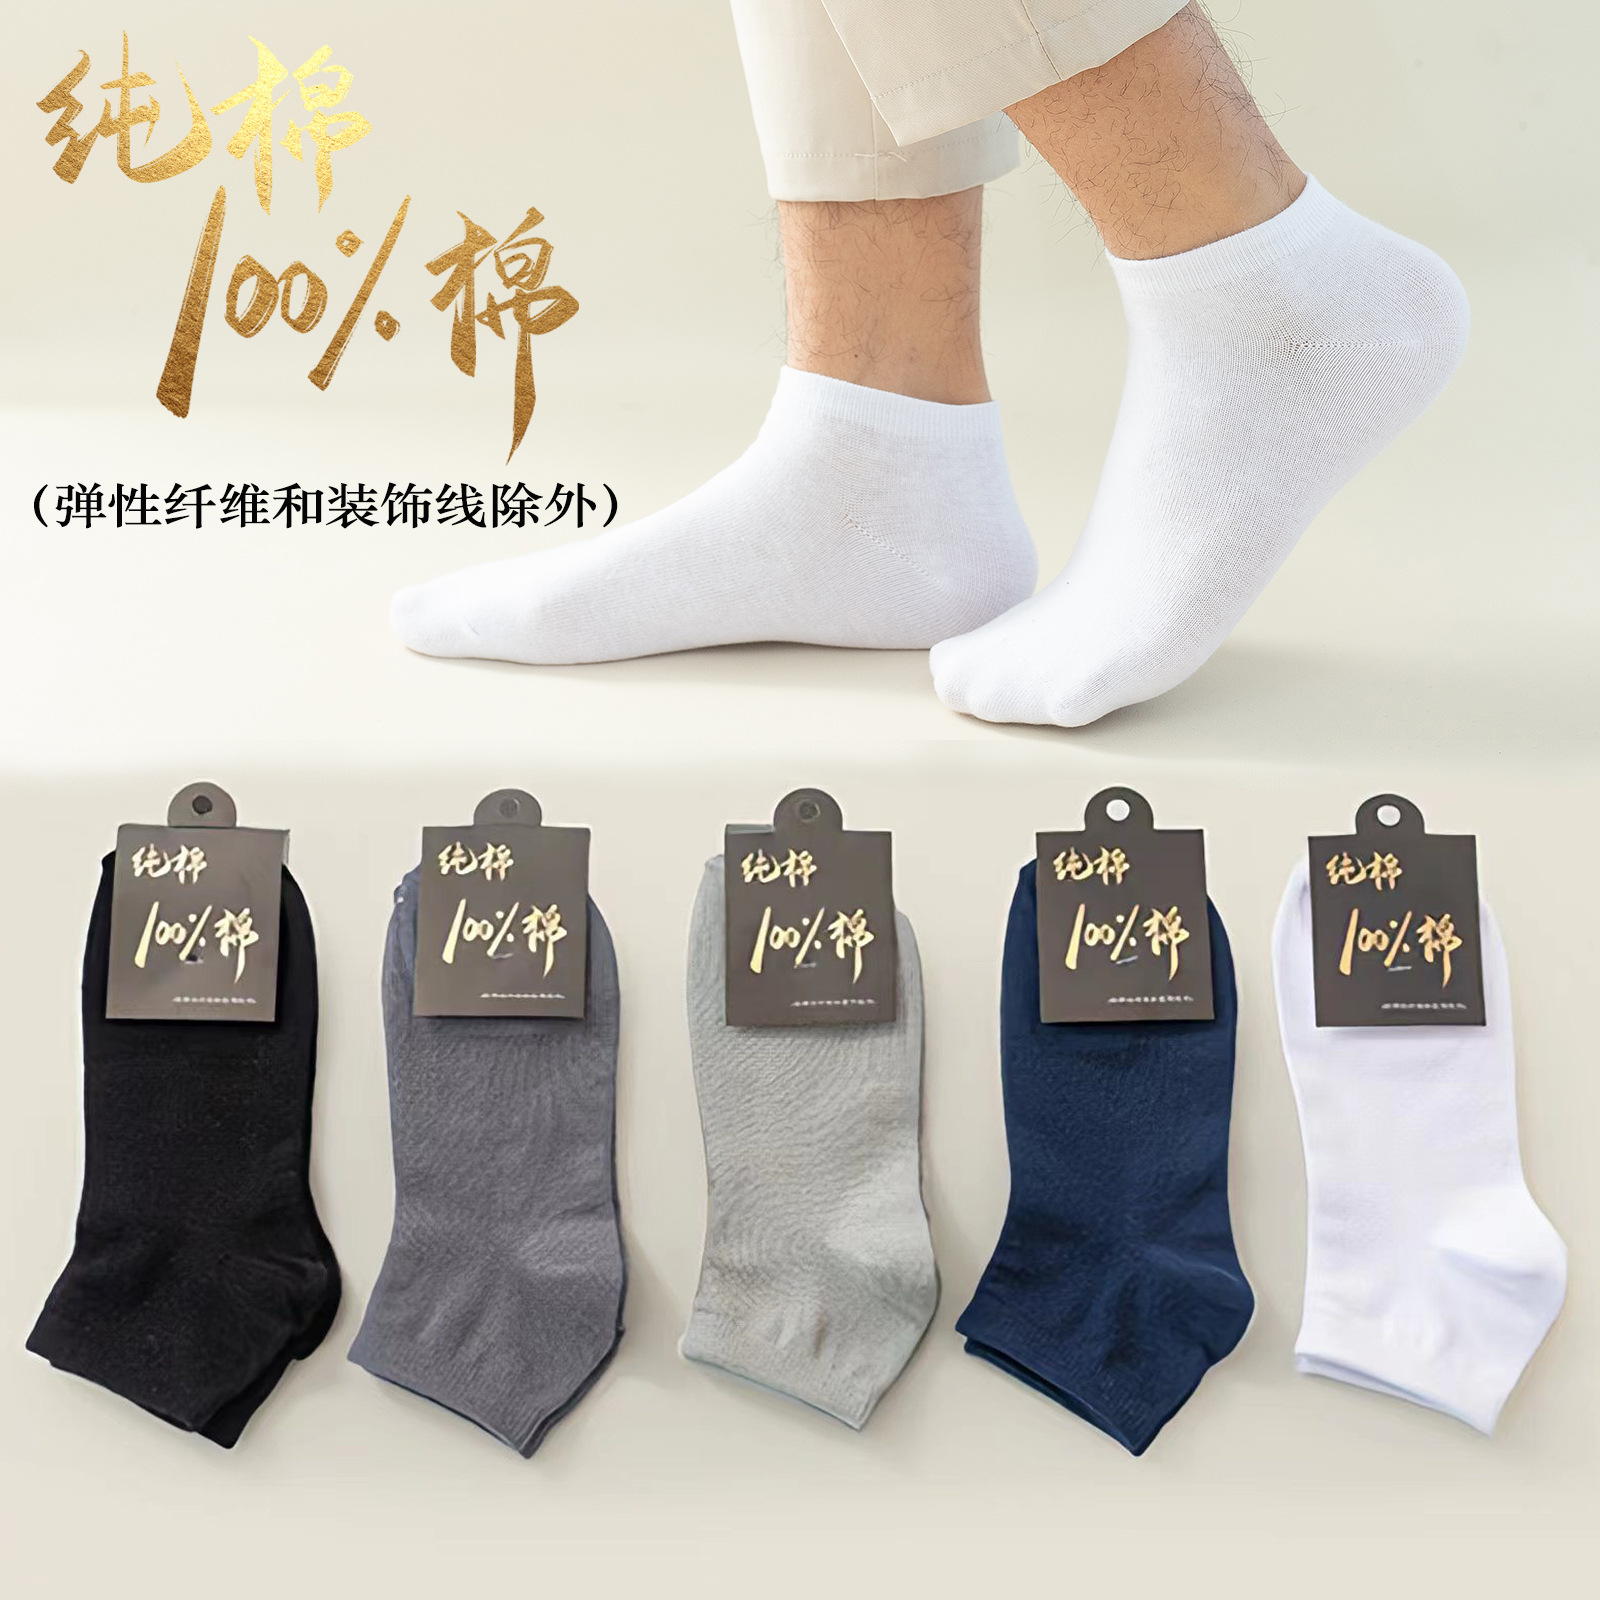 100%棉（弹性纤维和装饰线除外）男纯棉船袜批发全棉船袜纯棉袜子